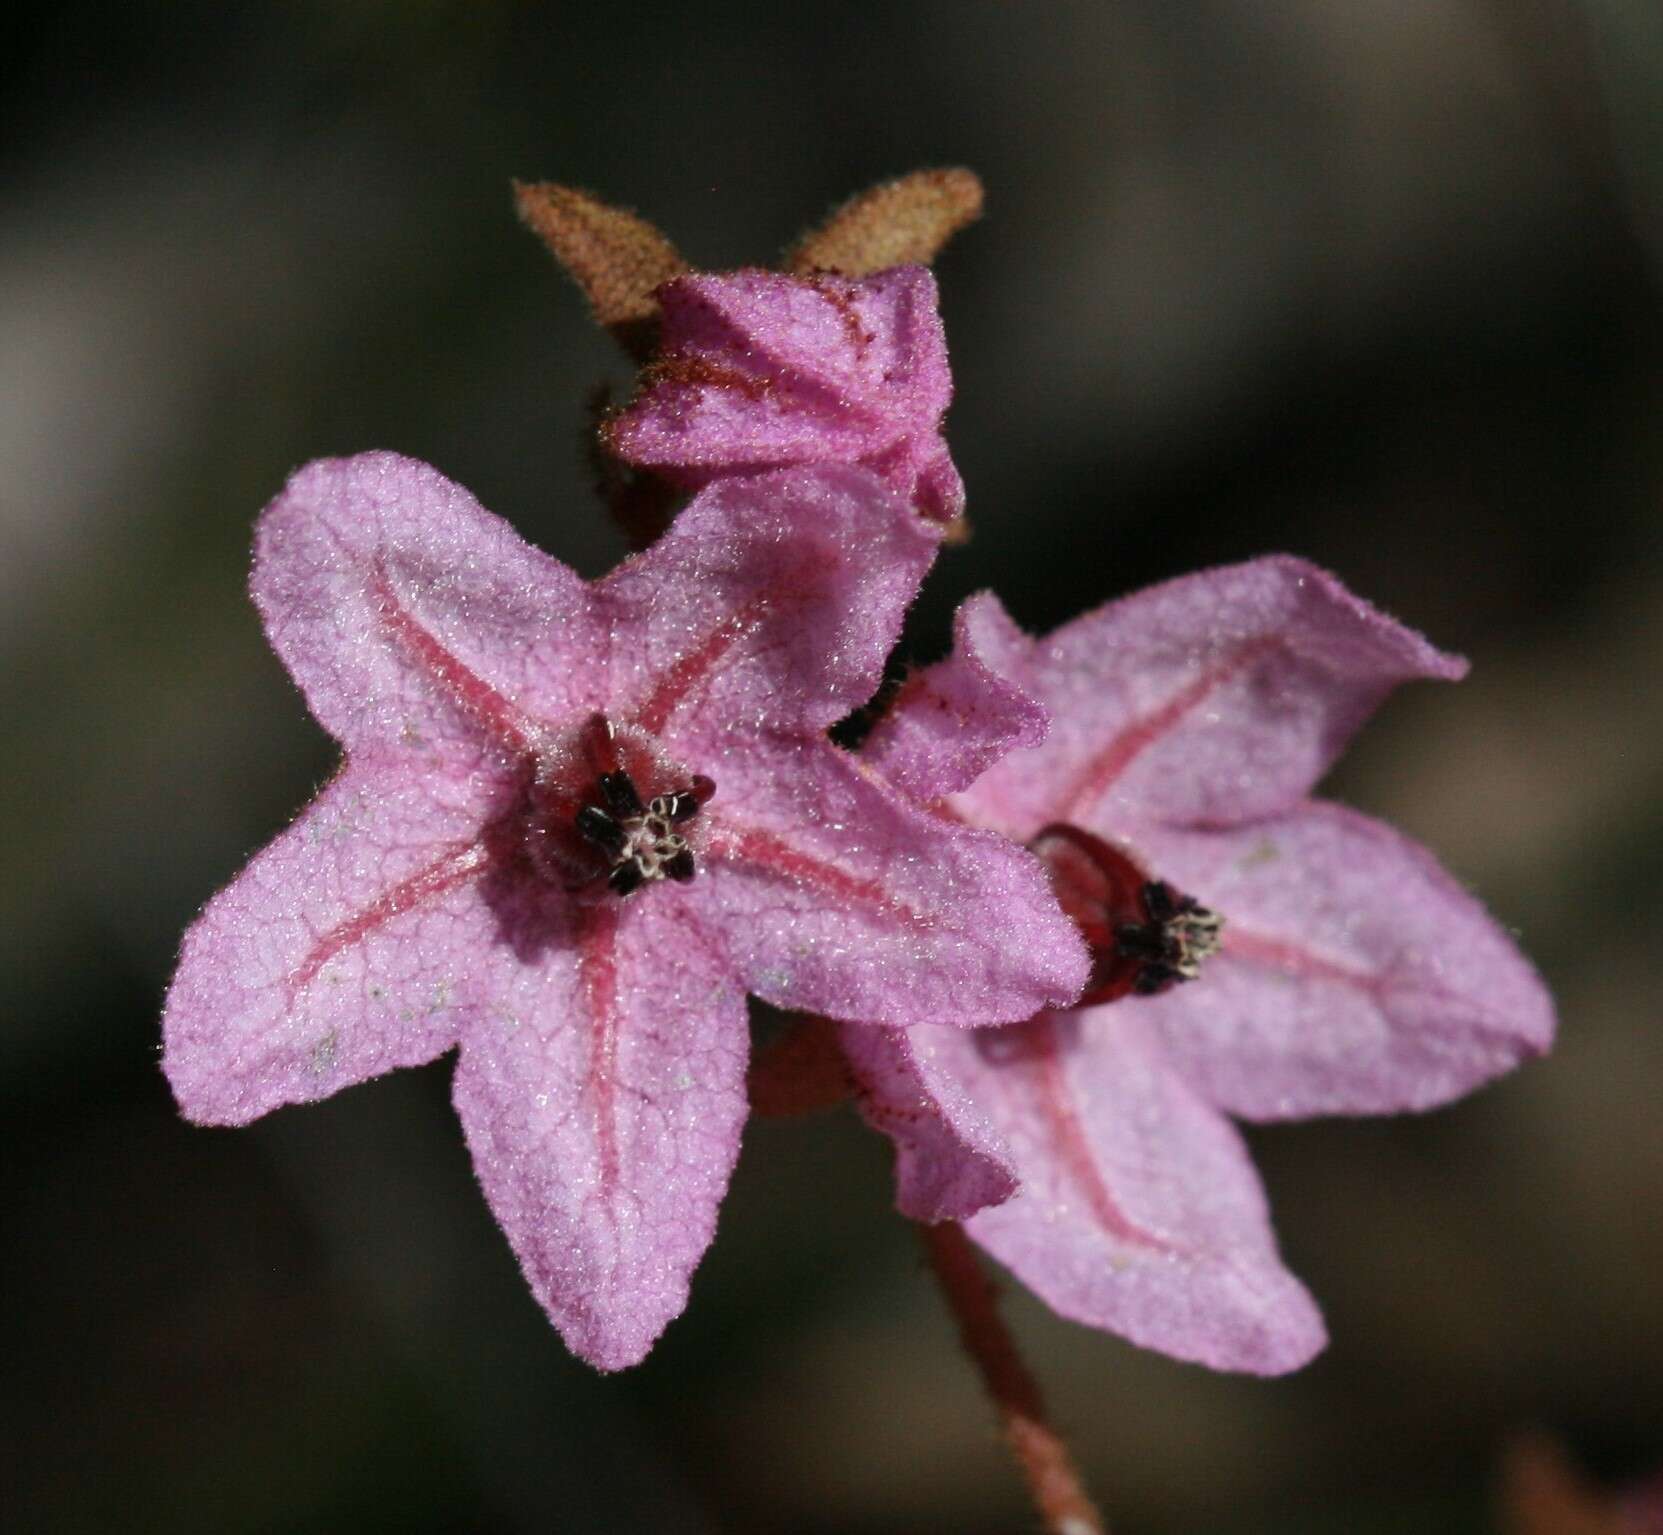 صورة Thomasia angustifolia Steud.